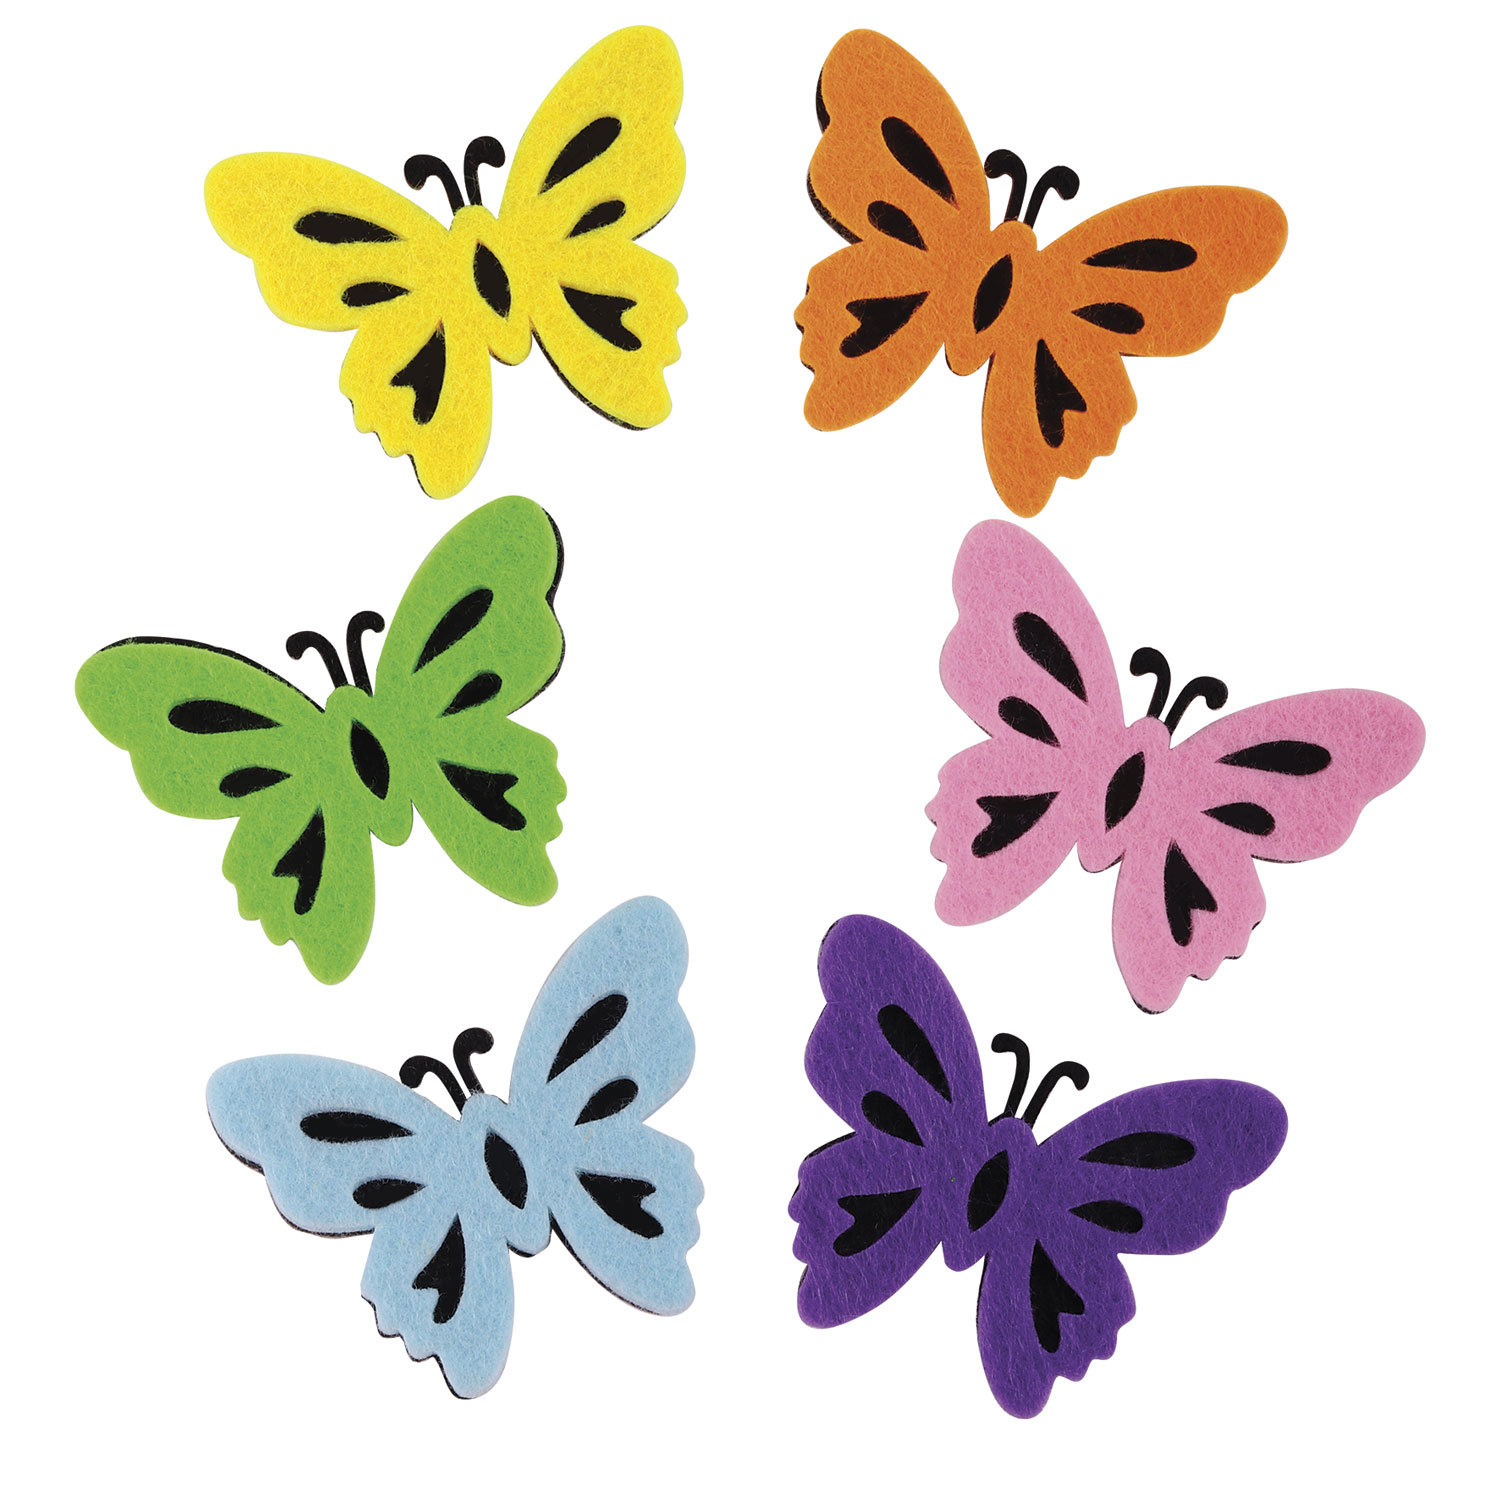 Наклейки Остров Сокровищ из фетра для творчества и декорирования одежды Бабочки двухцветные 6 штук - фото 3